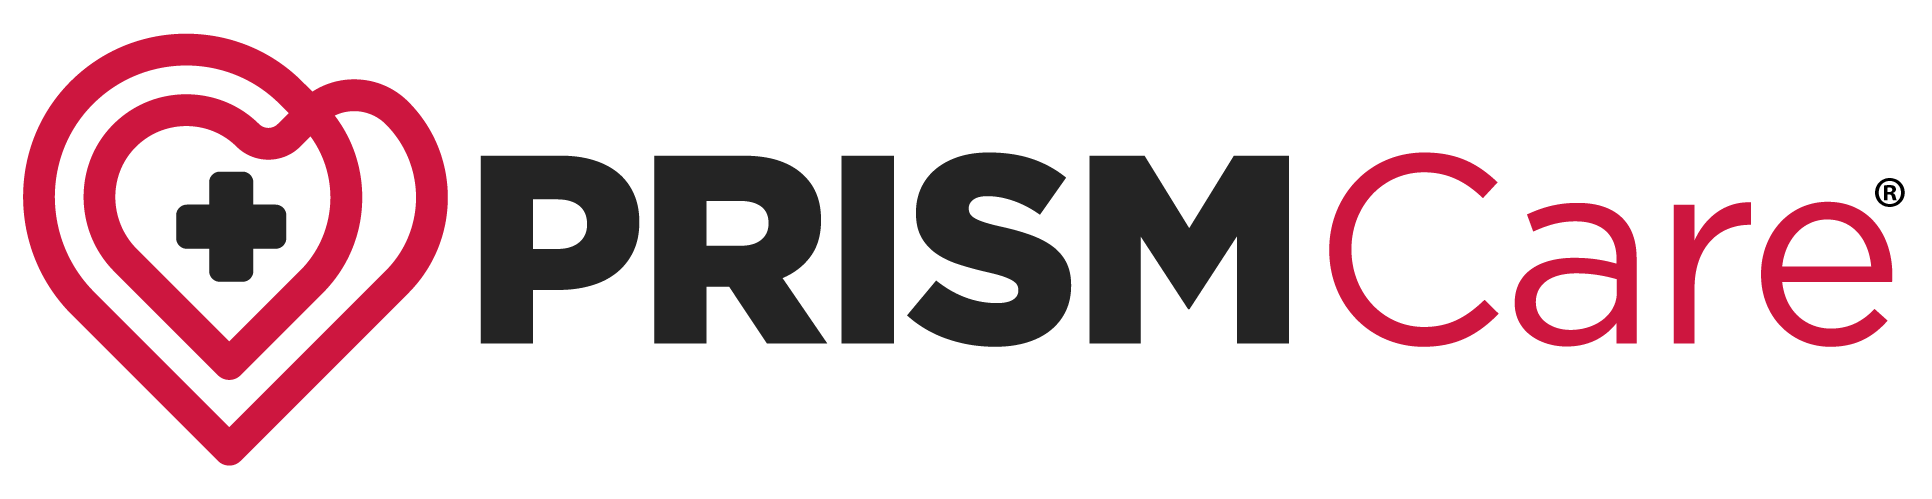 Prism Care logo one line